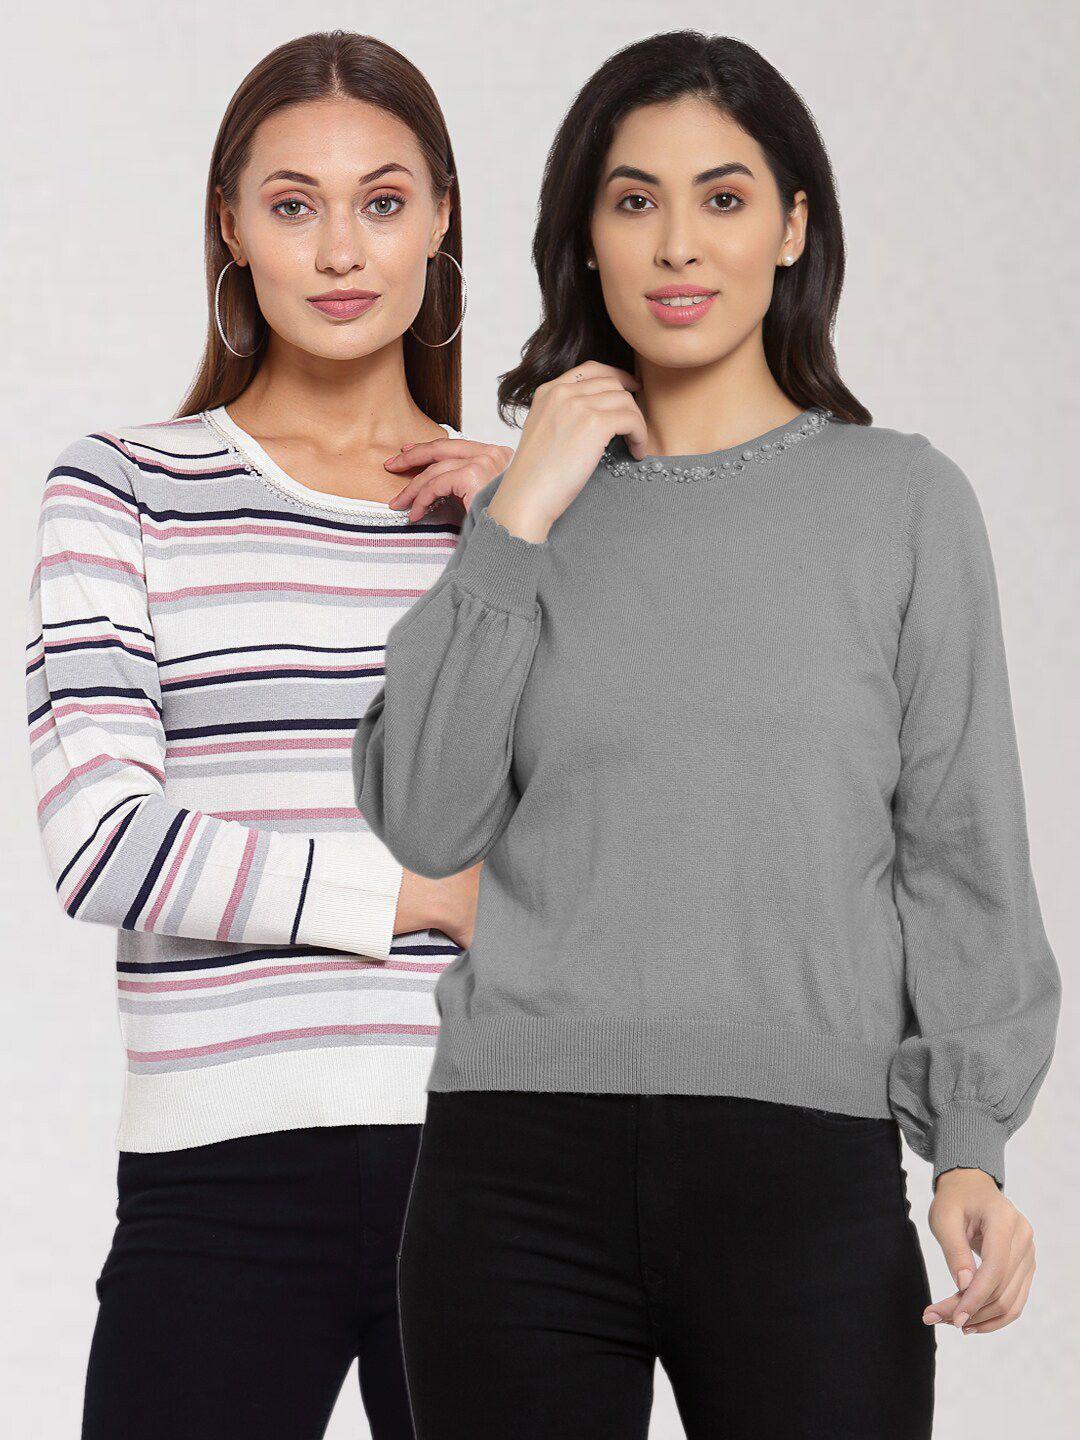 klotthe-women-multi-&-grey-pack-of-2-pullover